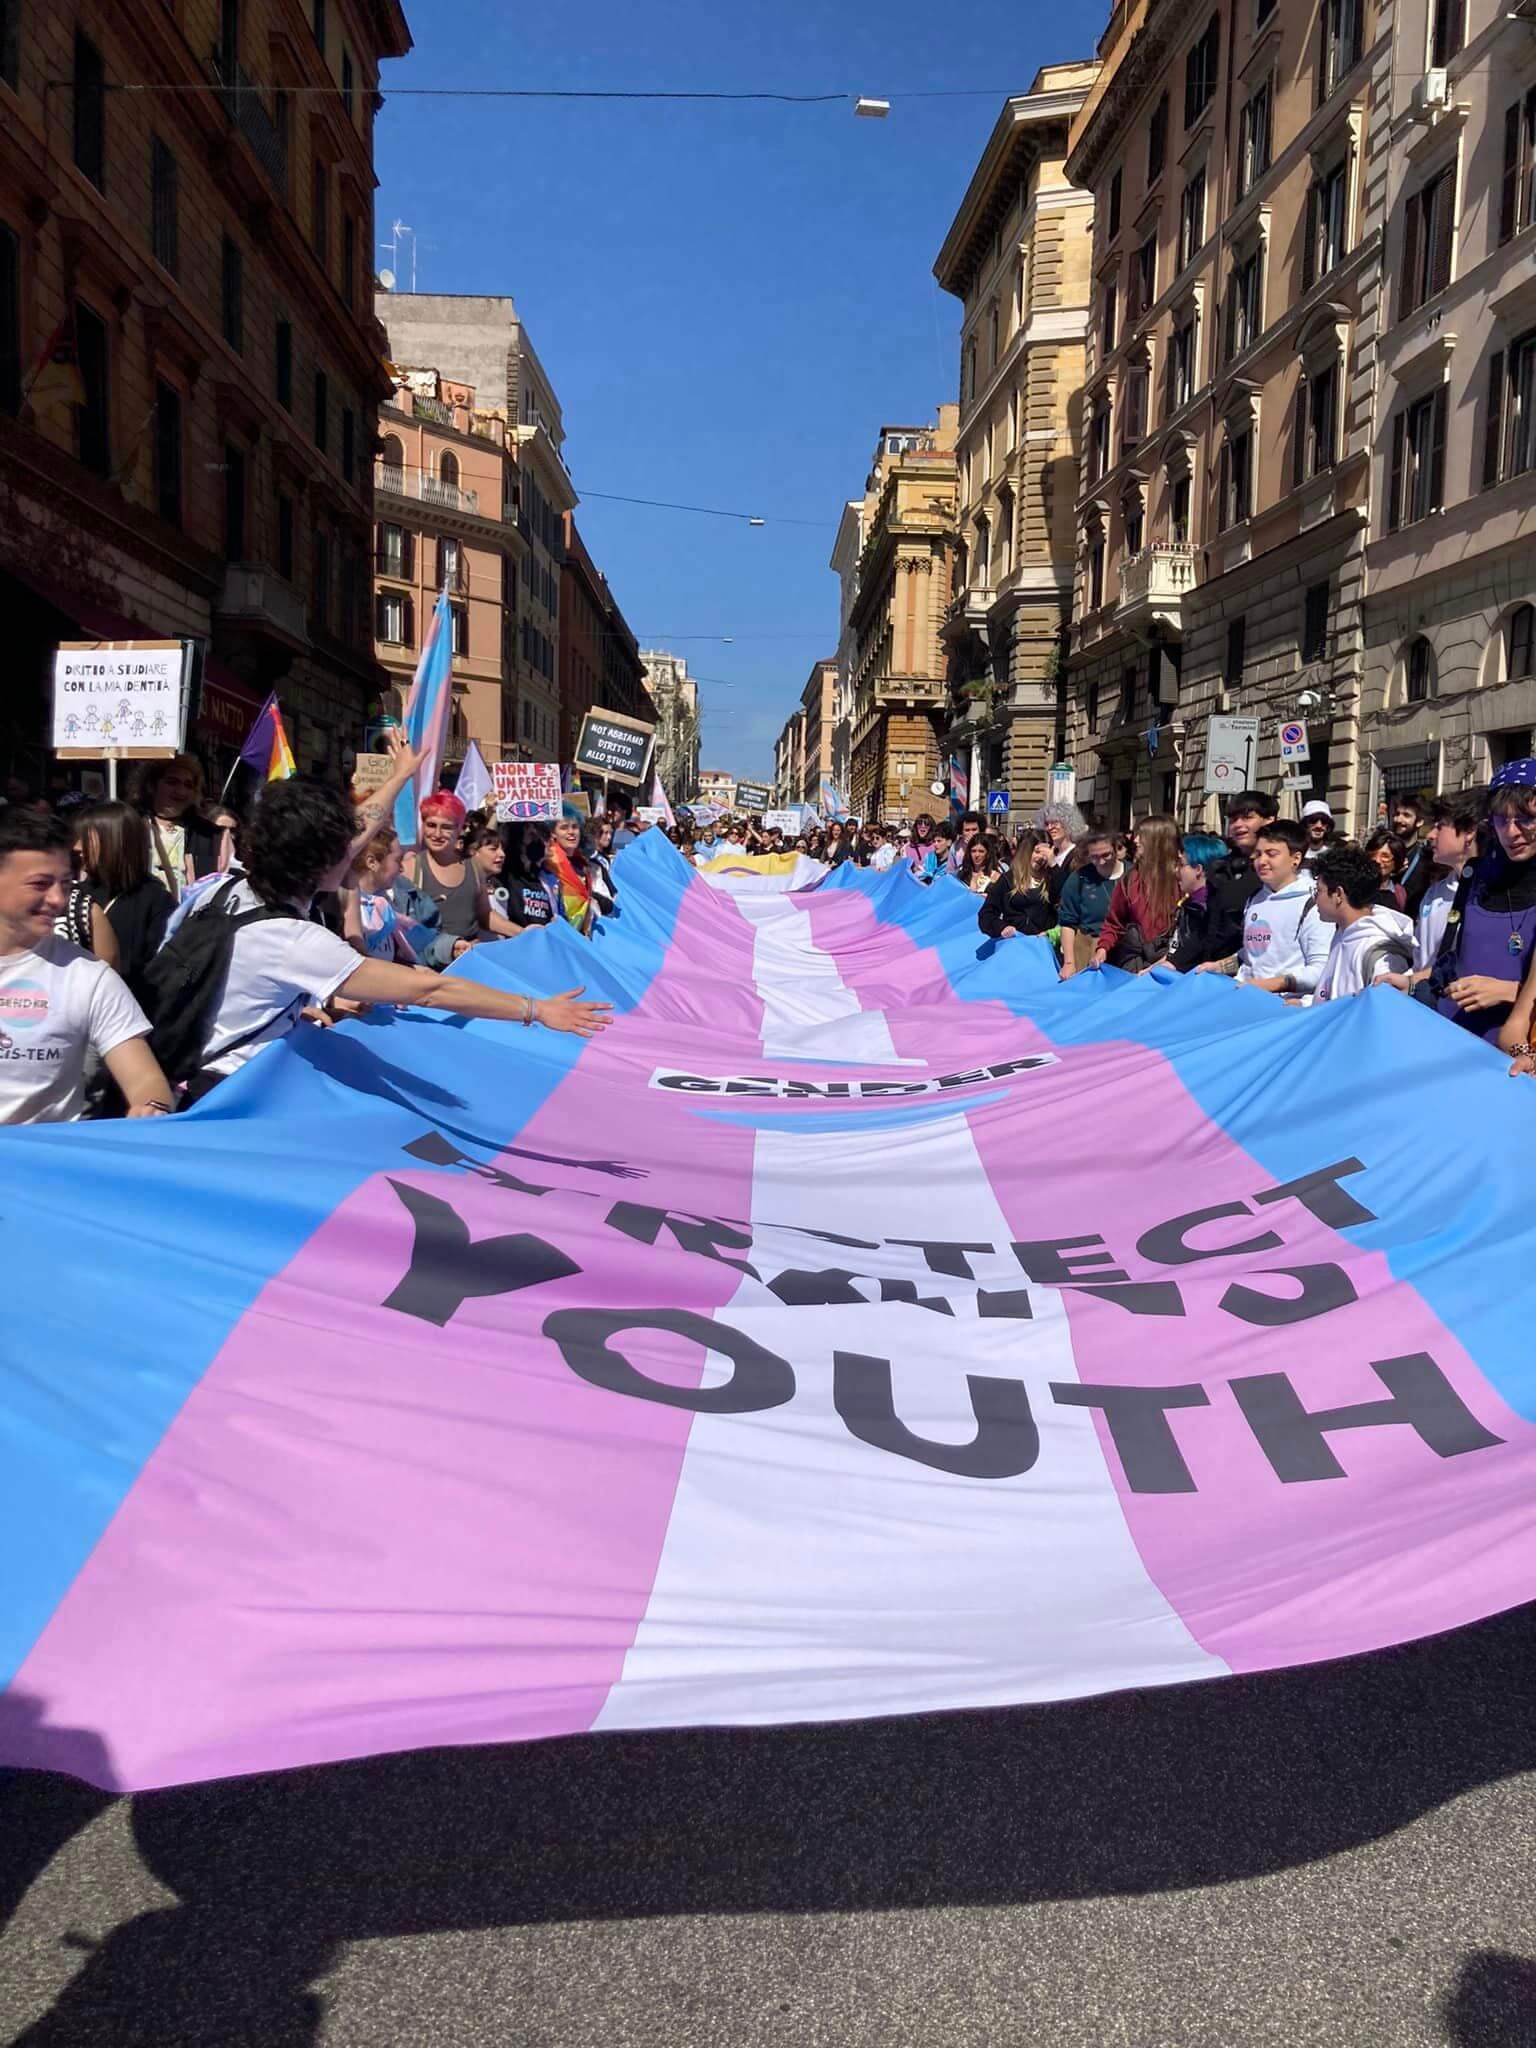 Roma, quasi 10.000 persone al primo corteo per la difesa dei diritti delle giovani persone trans - Roma quasi 10.000 persone al primo corteo per la difesa dei diritti delle persona trans 2 - Gay.it